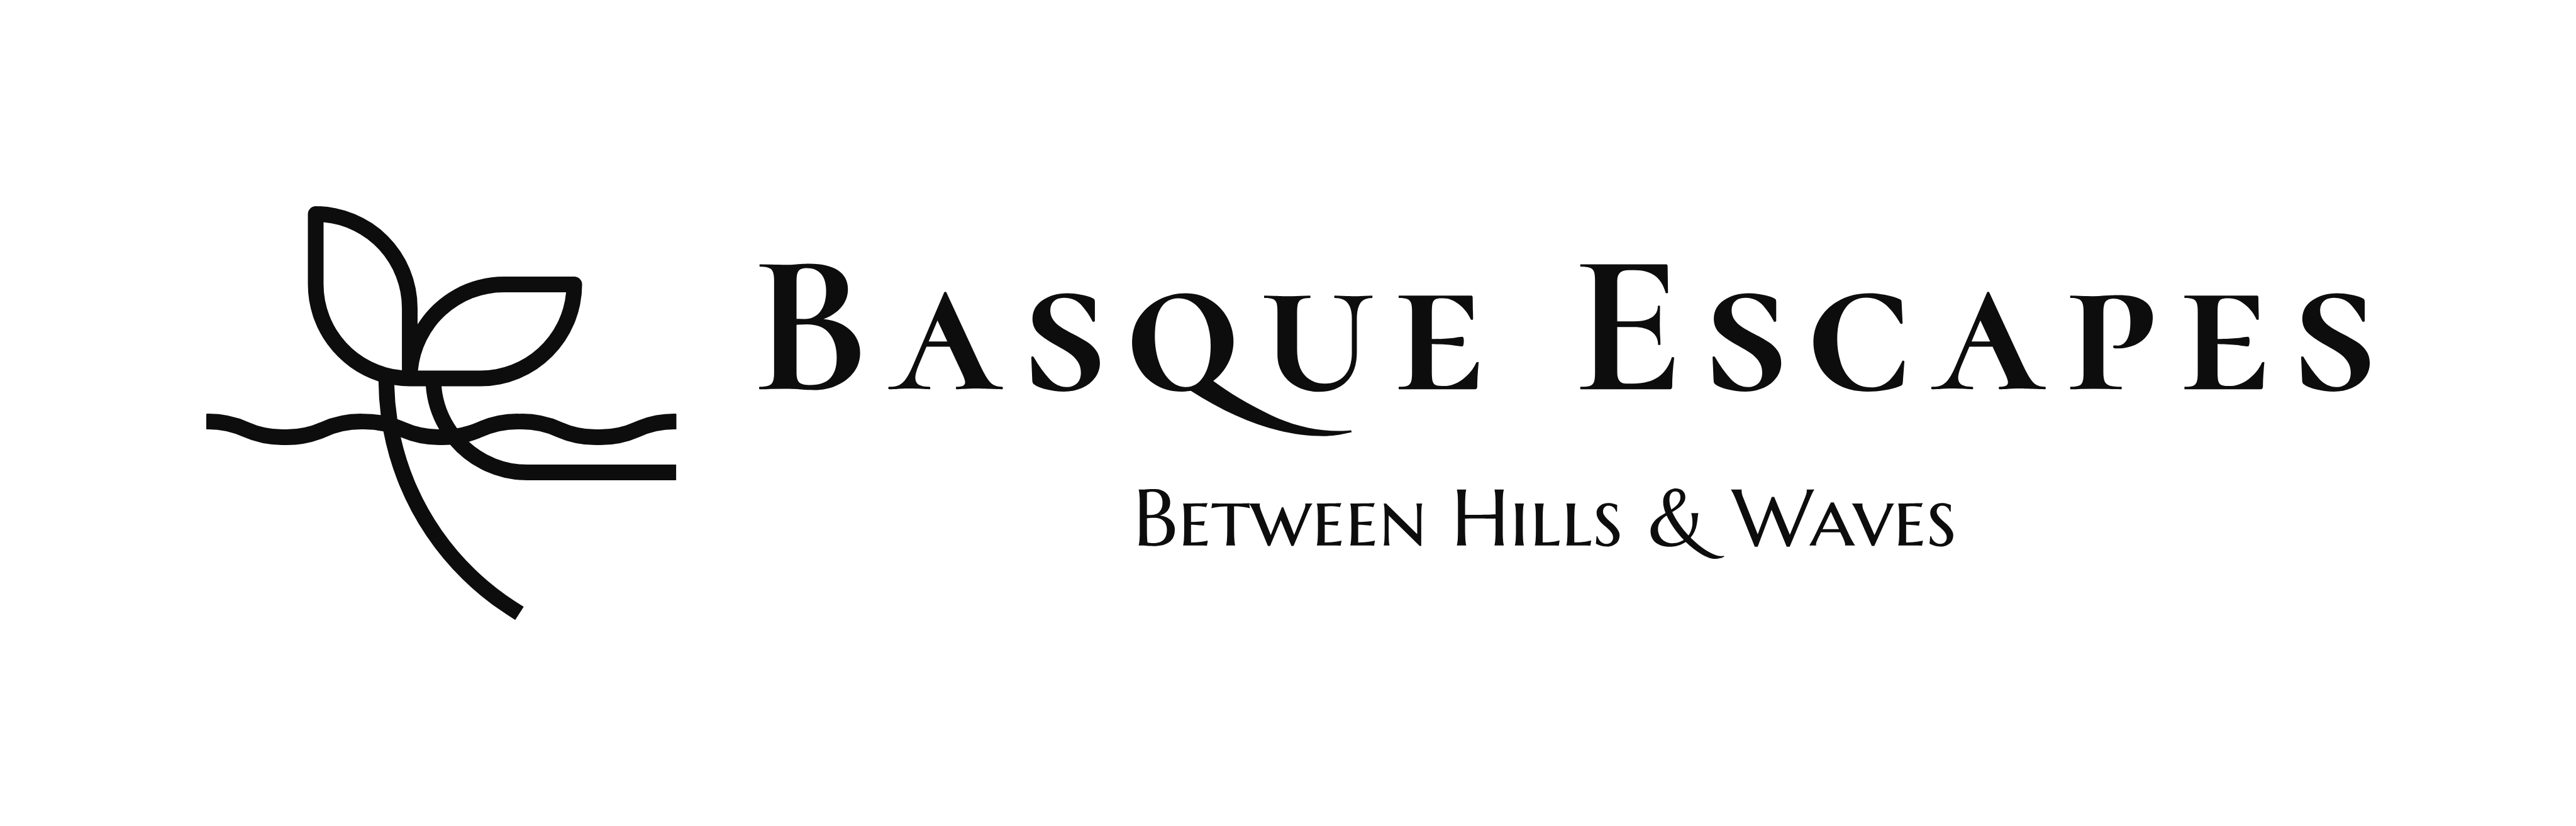 Basque Escapes - Between Hills & Waves